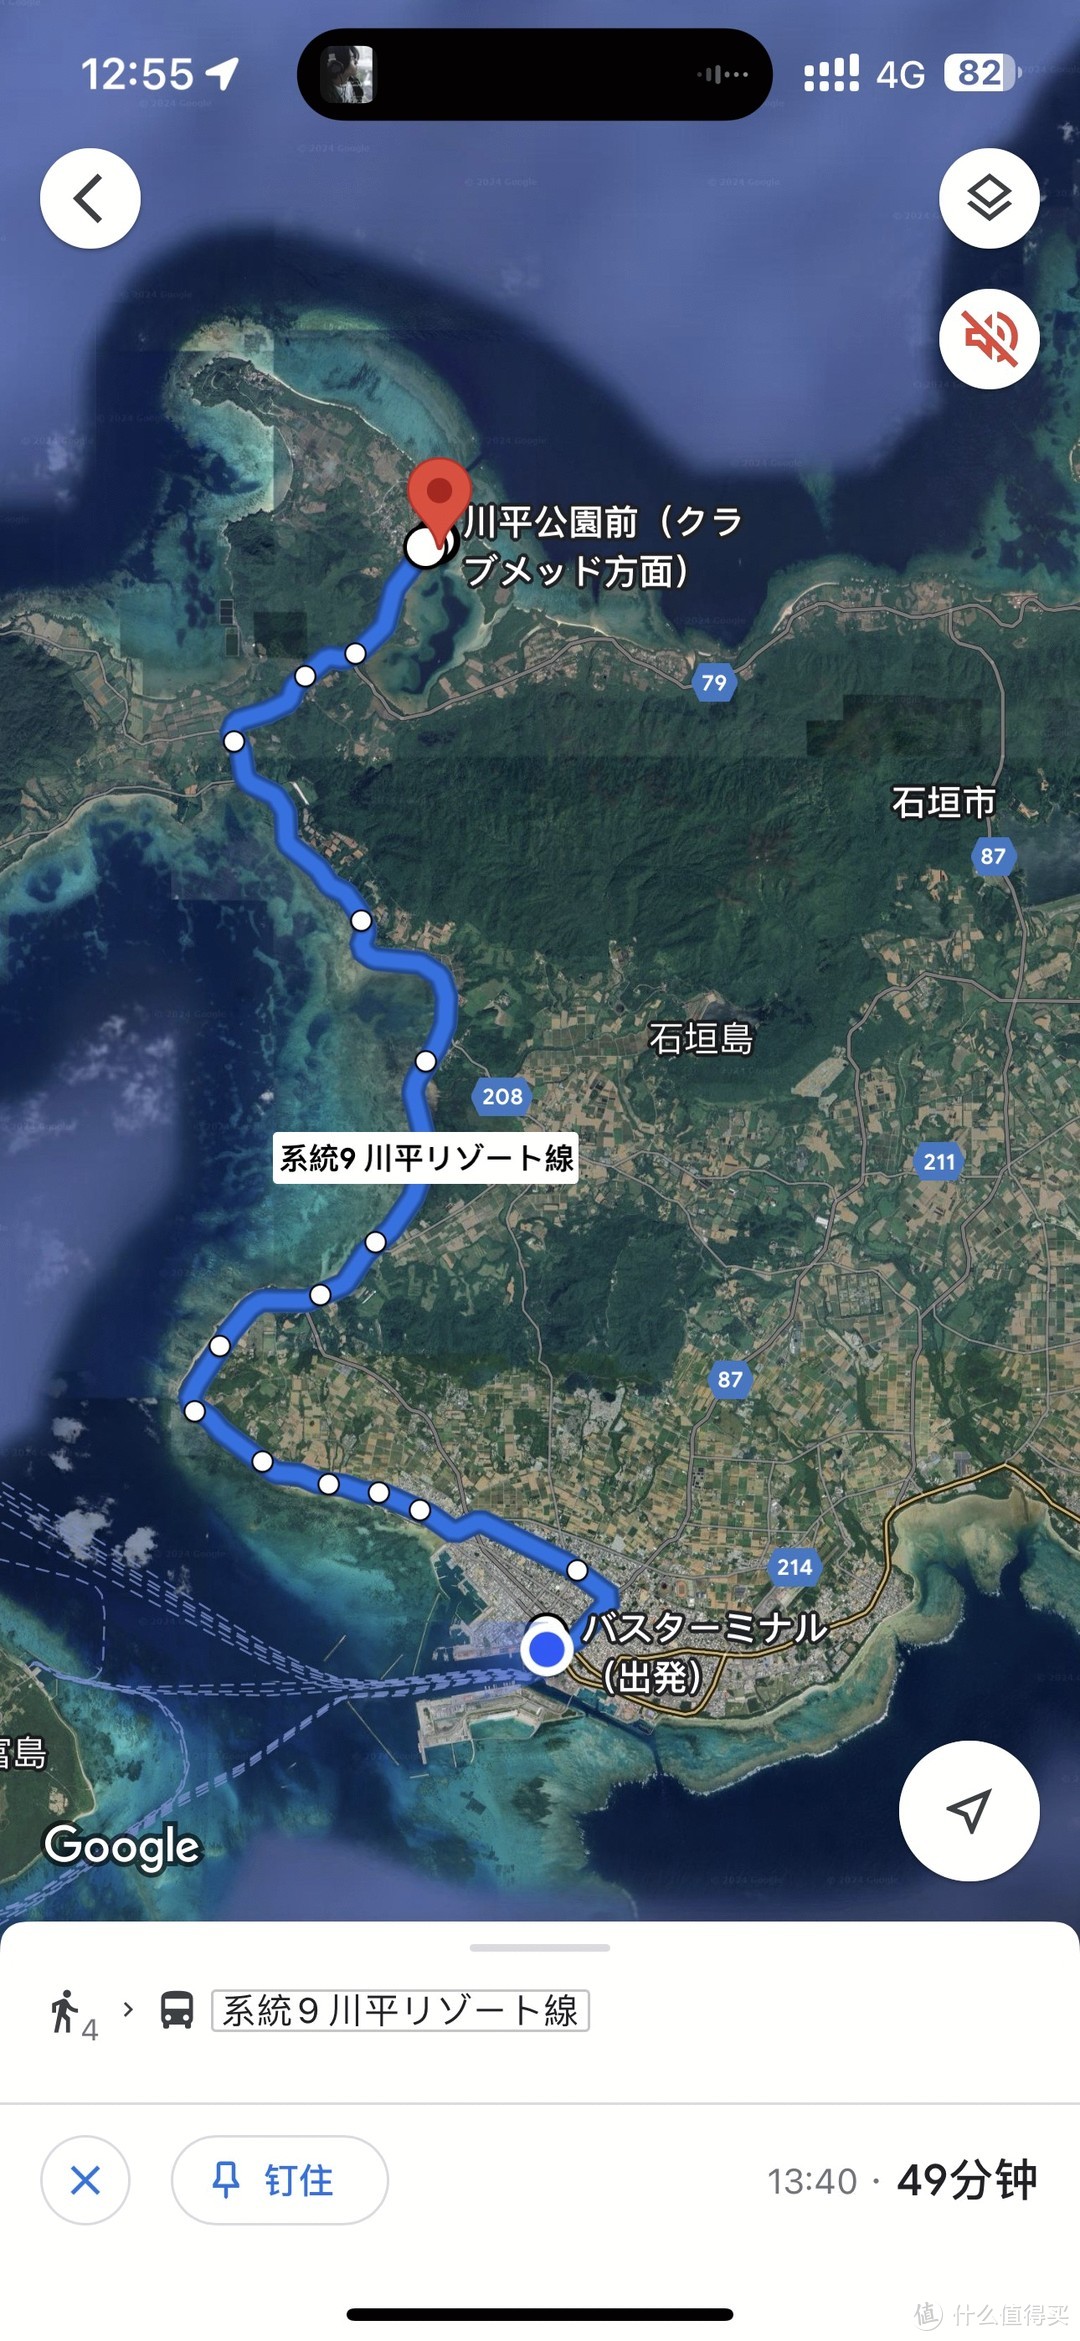 计划坐公交车去川平湾看海龟